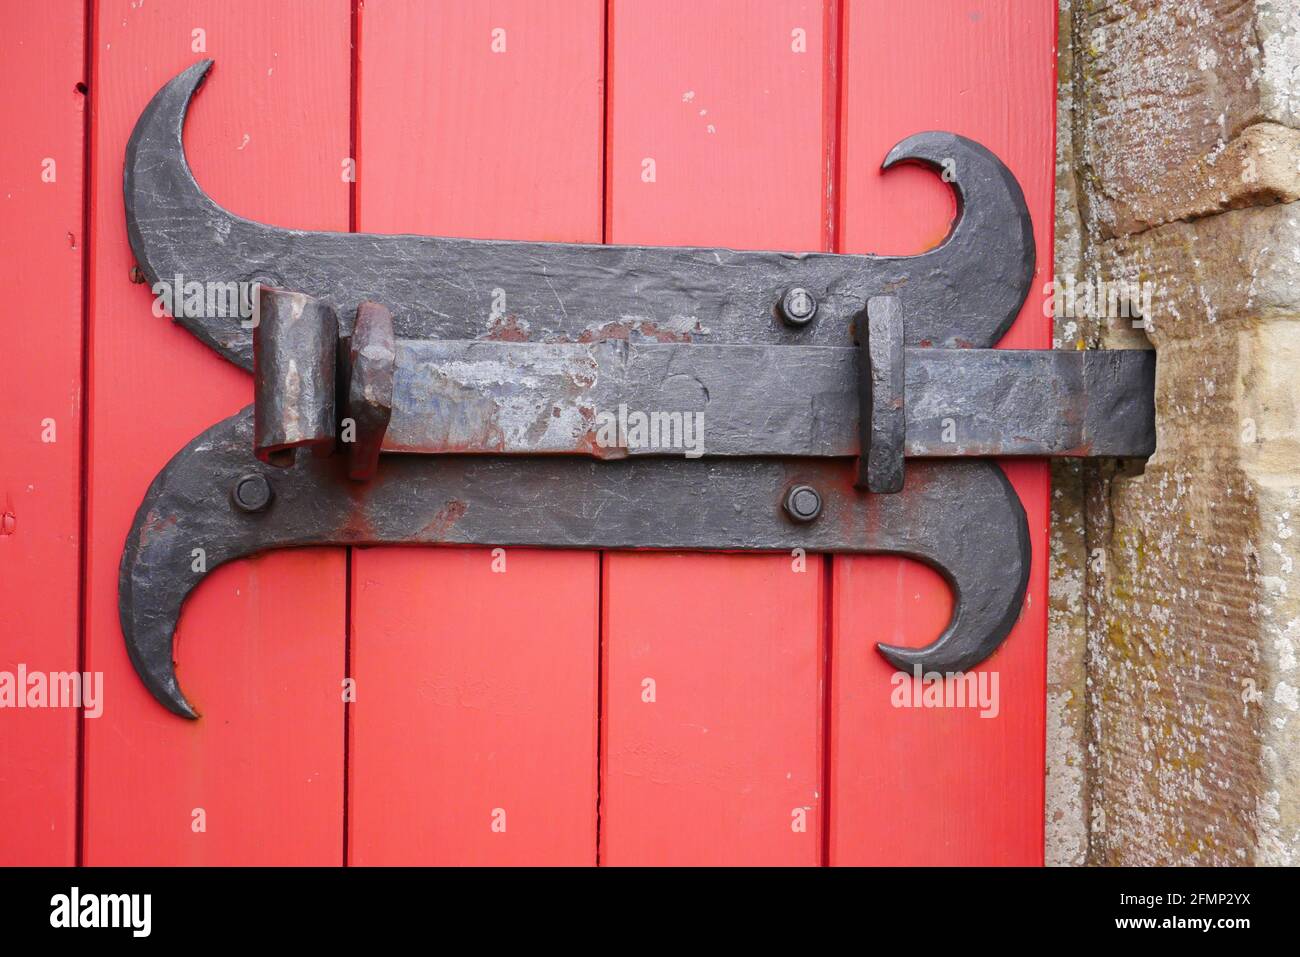 Alte kunstvolle Metallverriegelungsschraube als Türschloss an Eine rote  Holztür einer mittelalterlichen Burg Stockfotografie - Alamy